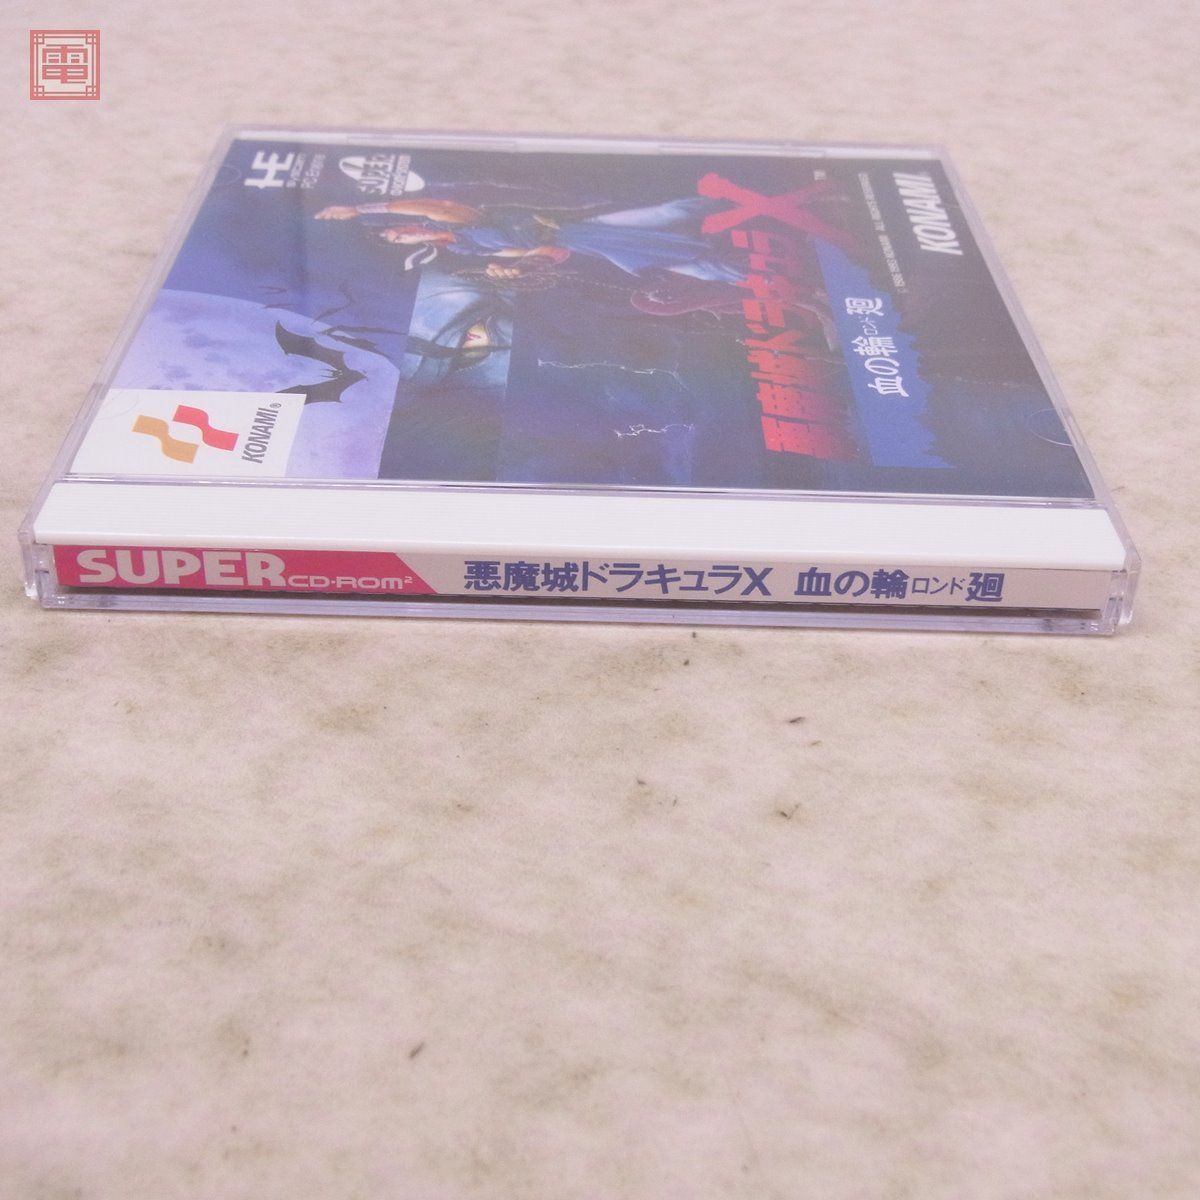 PCE PCエンジン SUPER CD-ROM2 悪魔城ドラキュラX 血の輪廻 コナミ